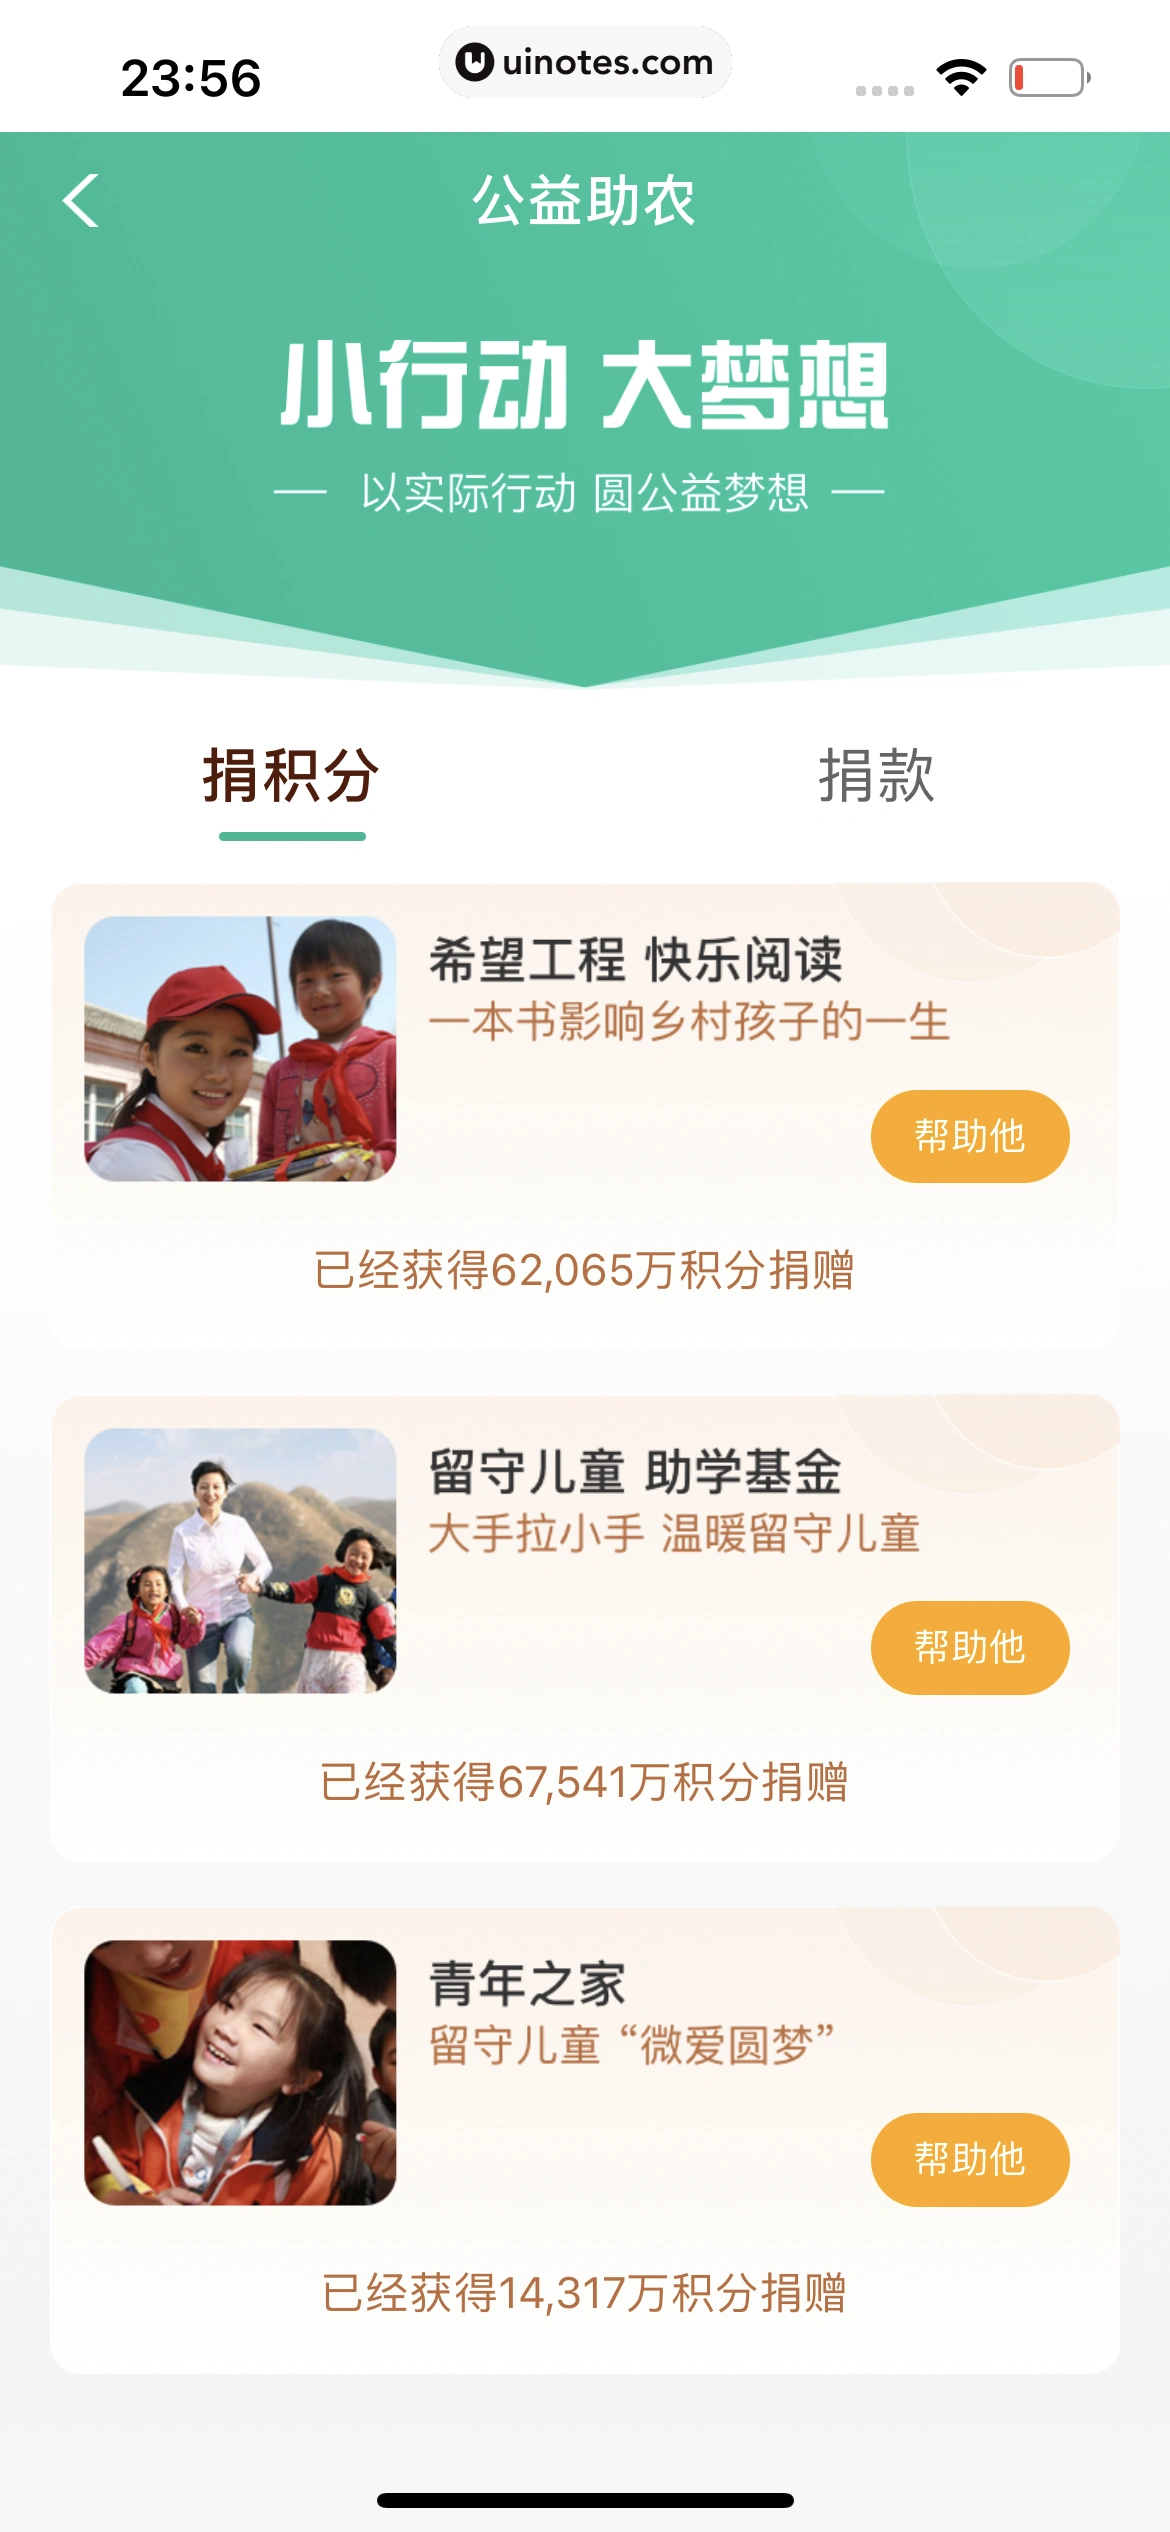 中国农业银行 App 截图 236 - UI Notes